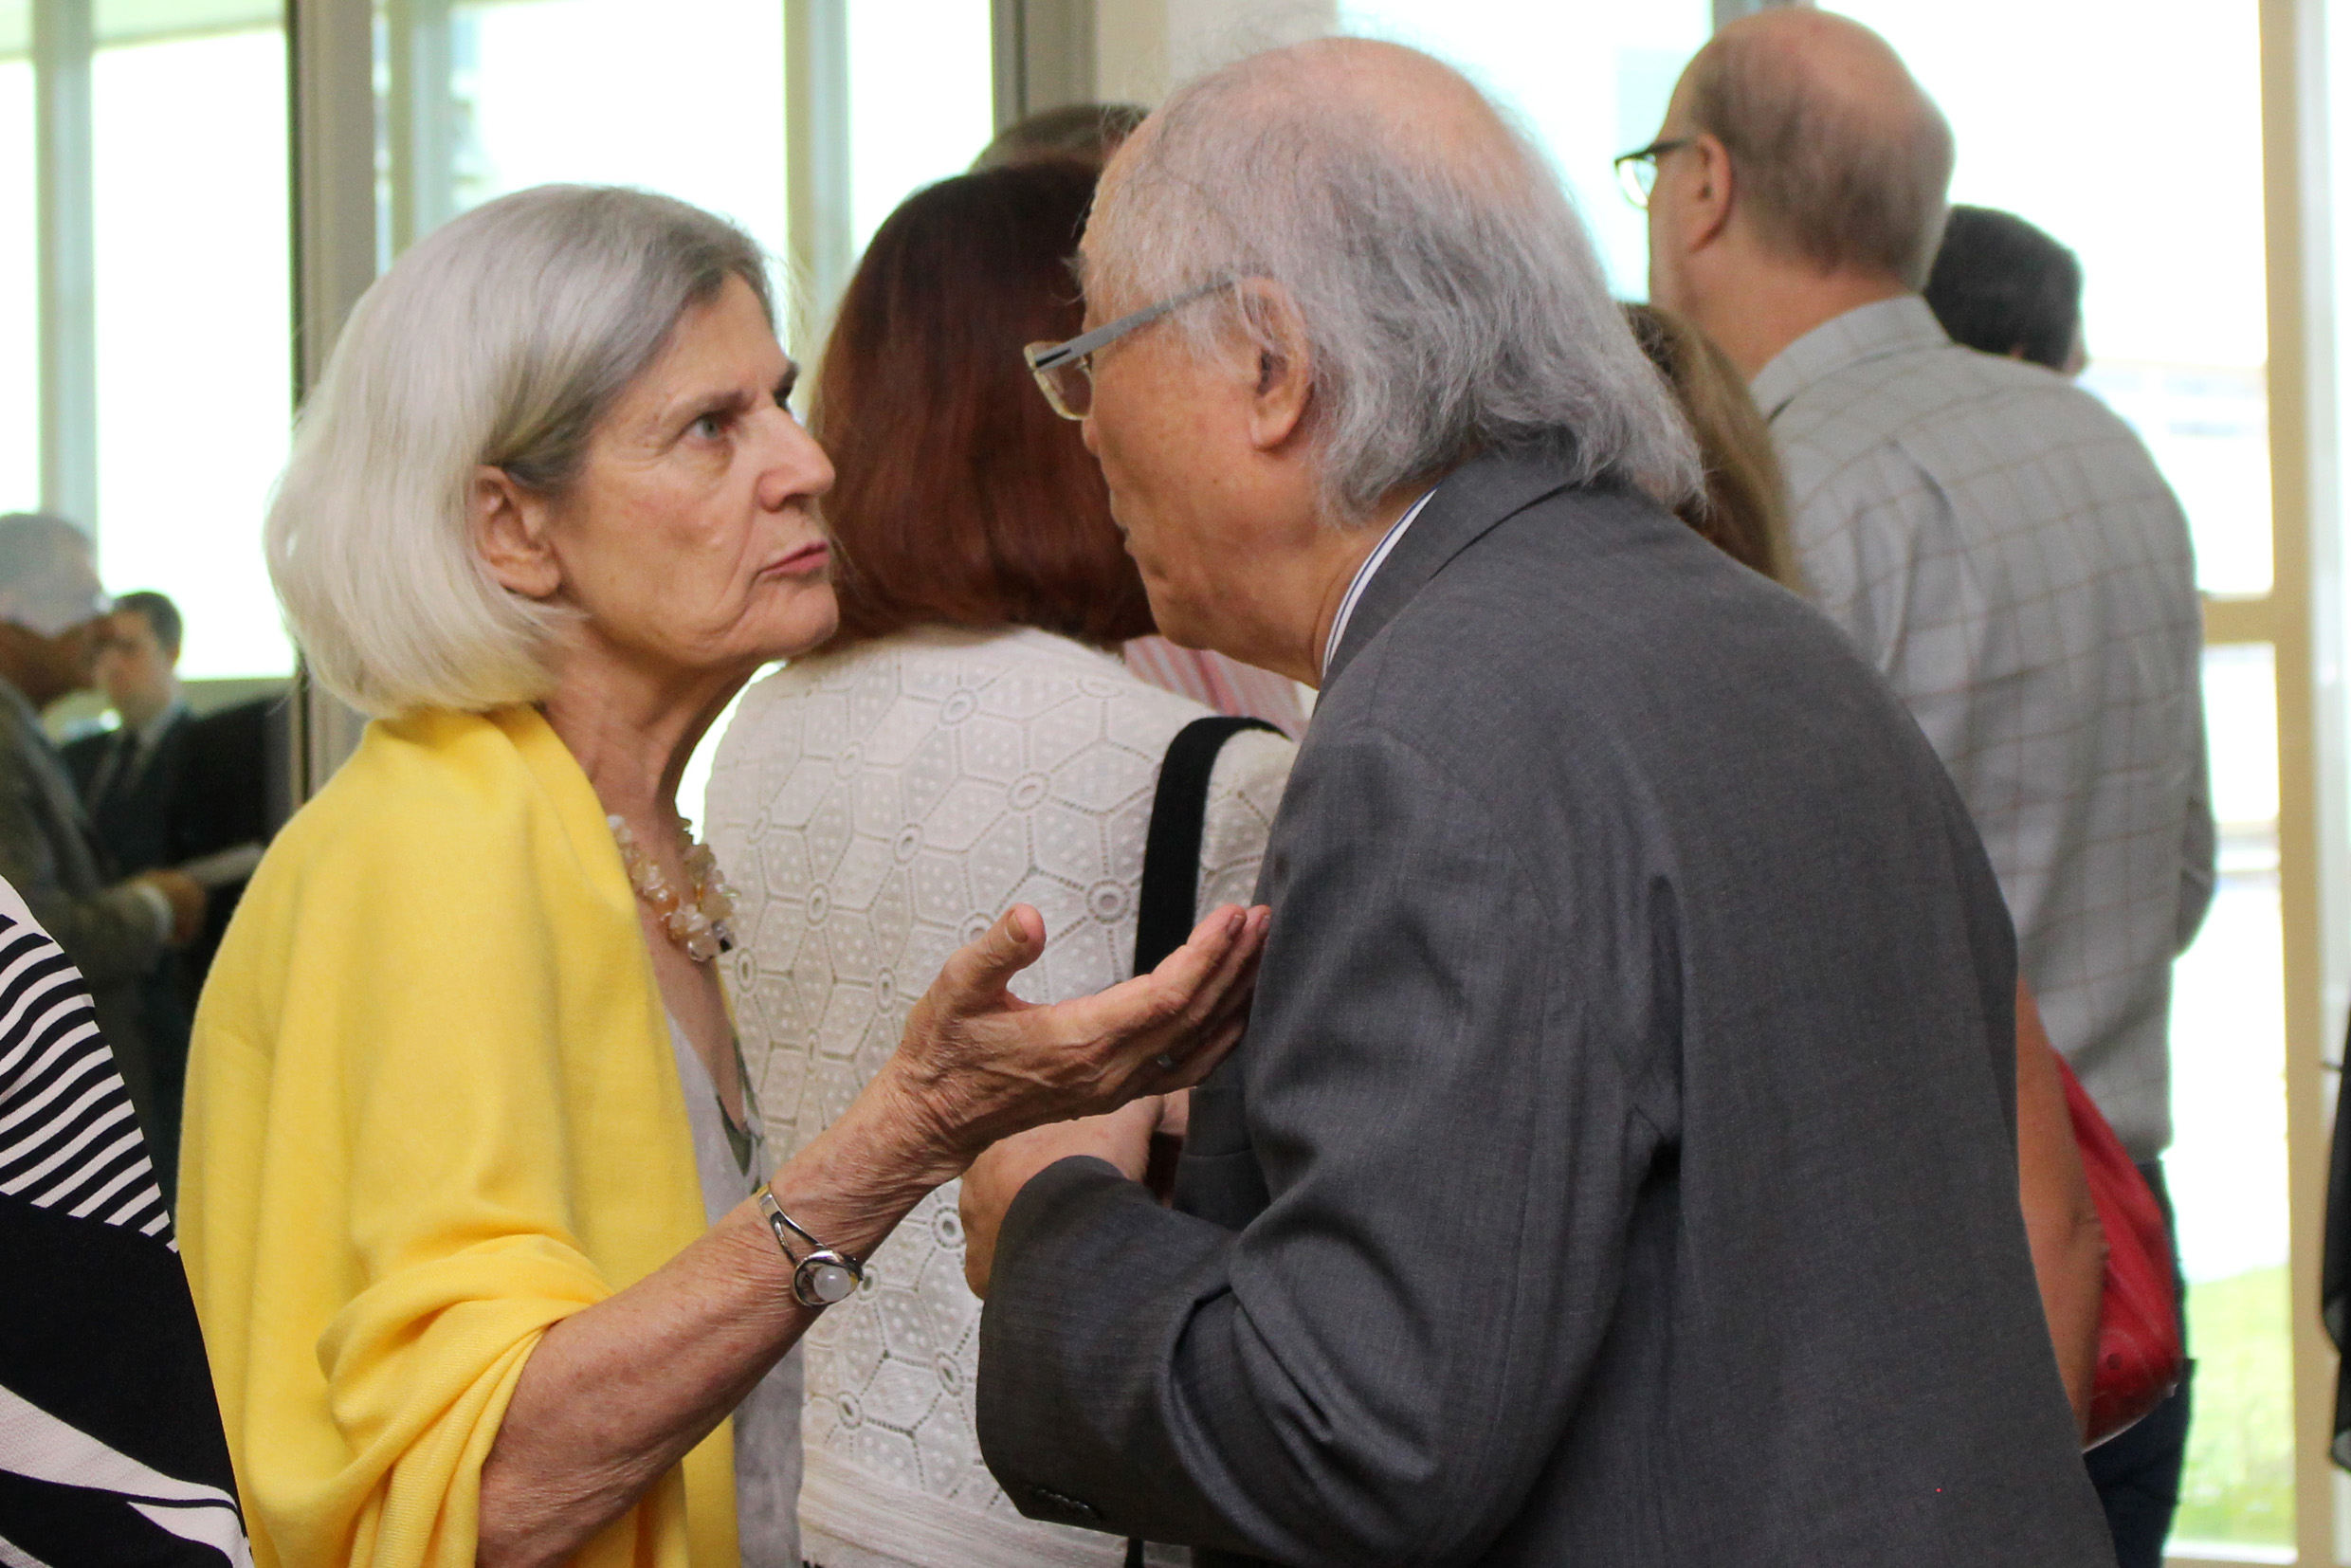 Barbara Freitag and Ricardo Ohtake